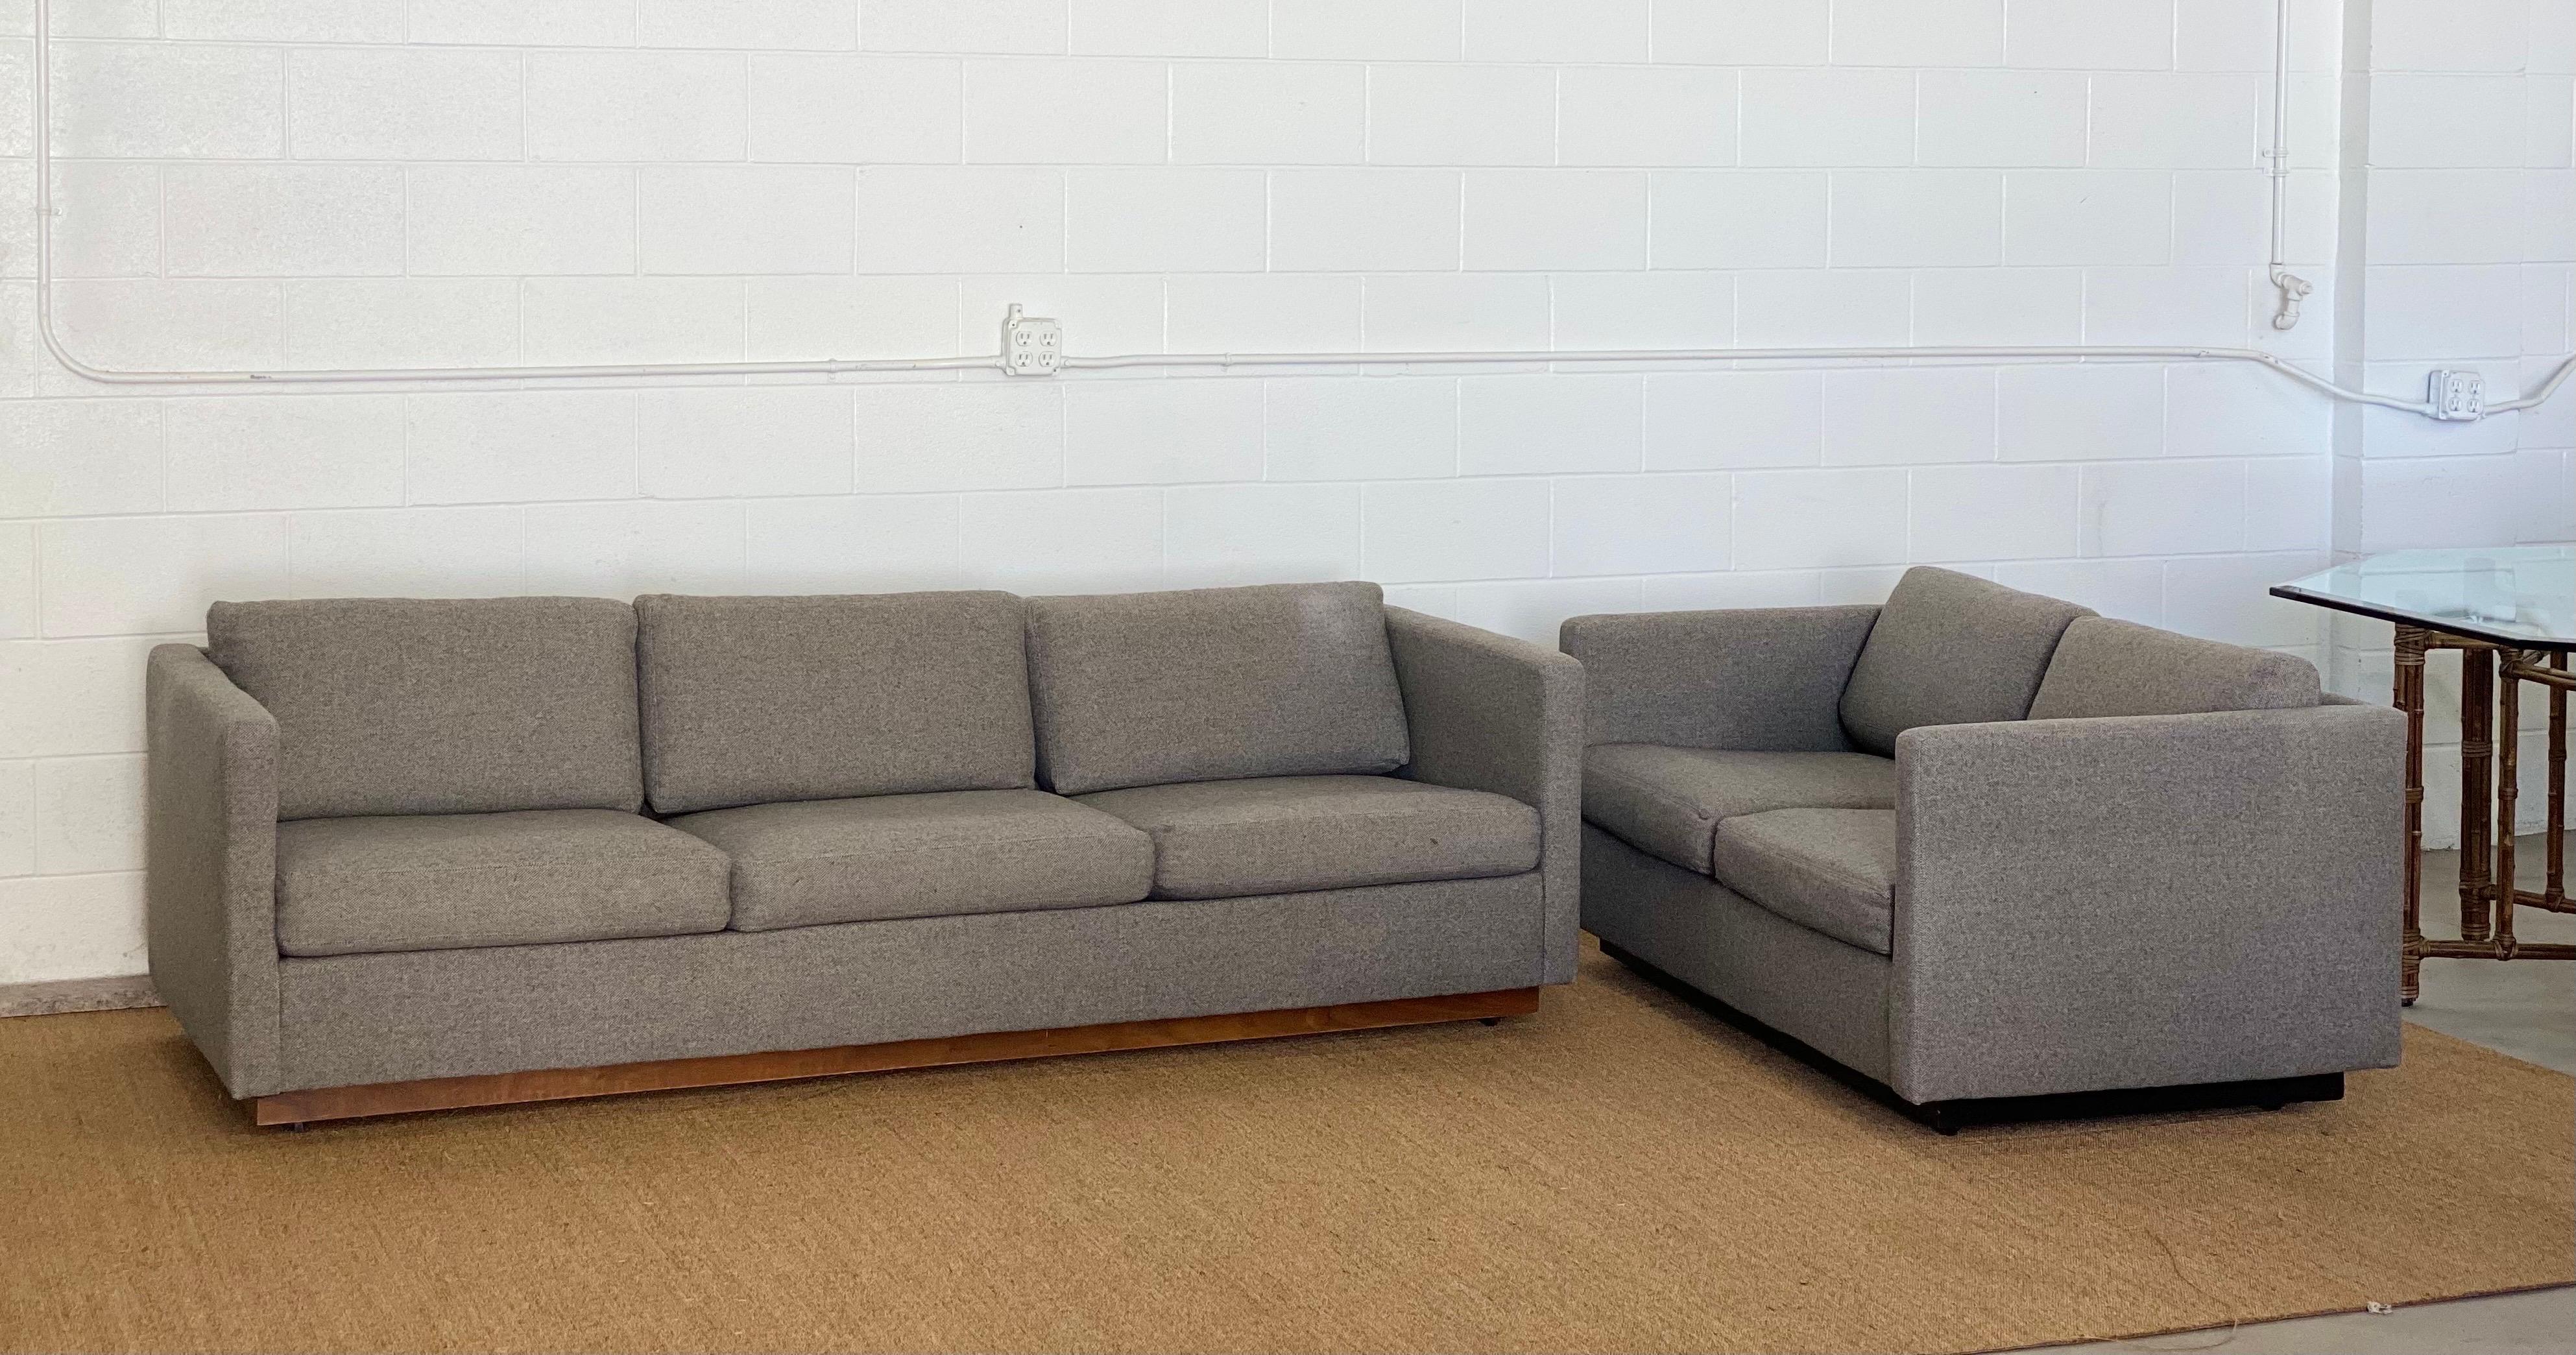 Nous avons le plaisir de vous proposer un canapé chic de style smoking réalisé par le designer américain Milo Baughman pour Thayer CIRCA, vers les années 1980. Ce canapé présente un cadre enveloppant et des coussins libres revêtus d'un tissu gris,